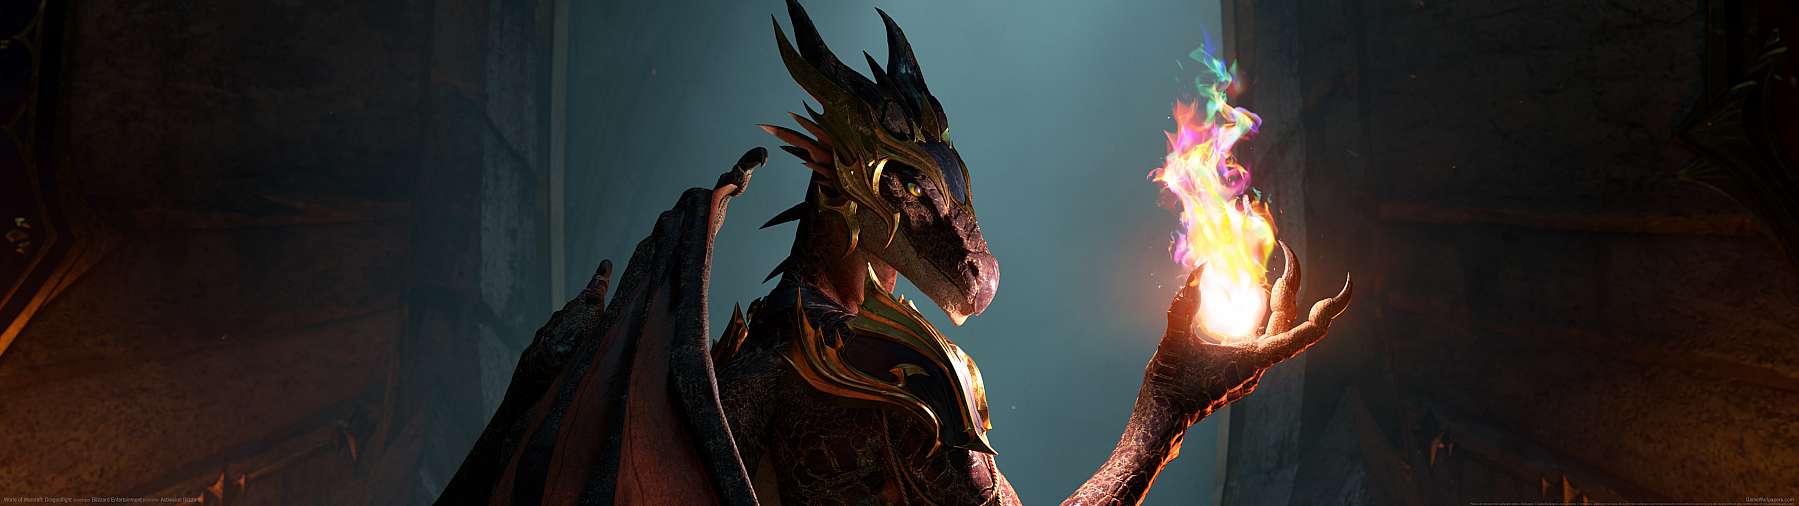 World of Warcraft: Dragonflight superwide Hintergrundbild 02